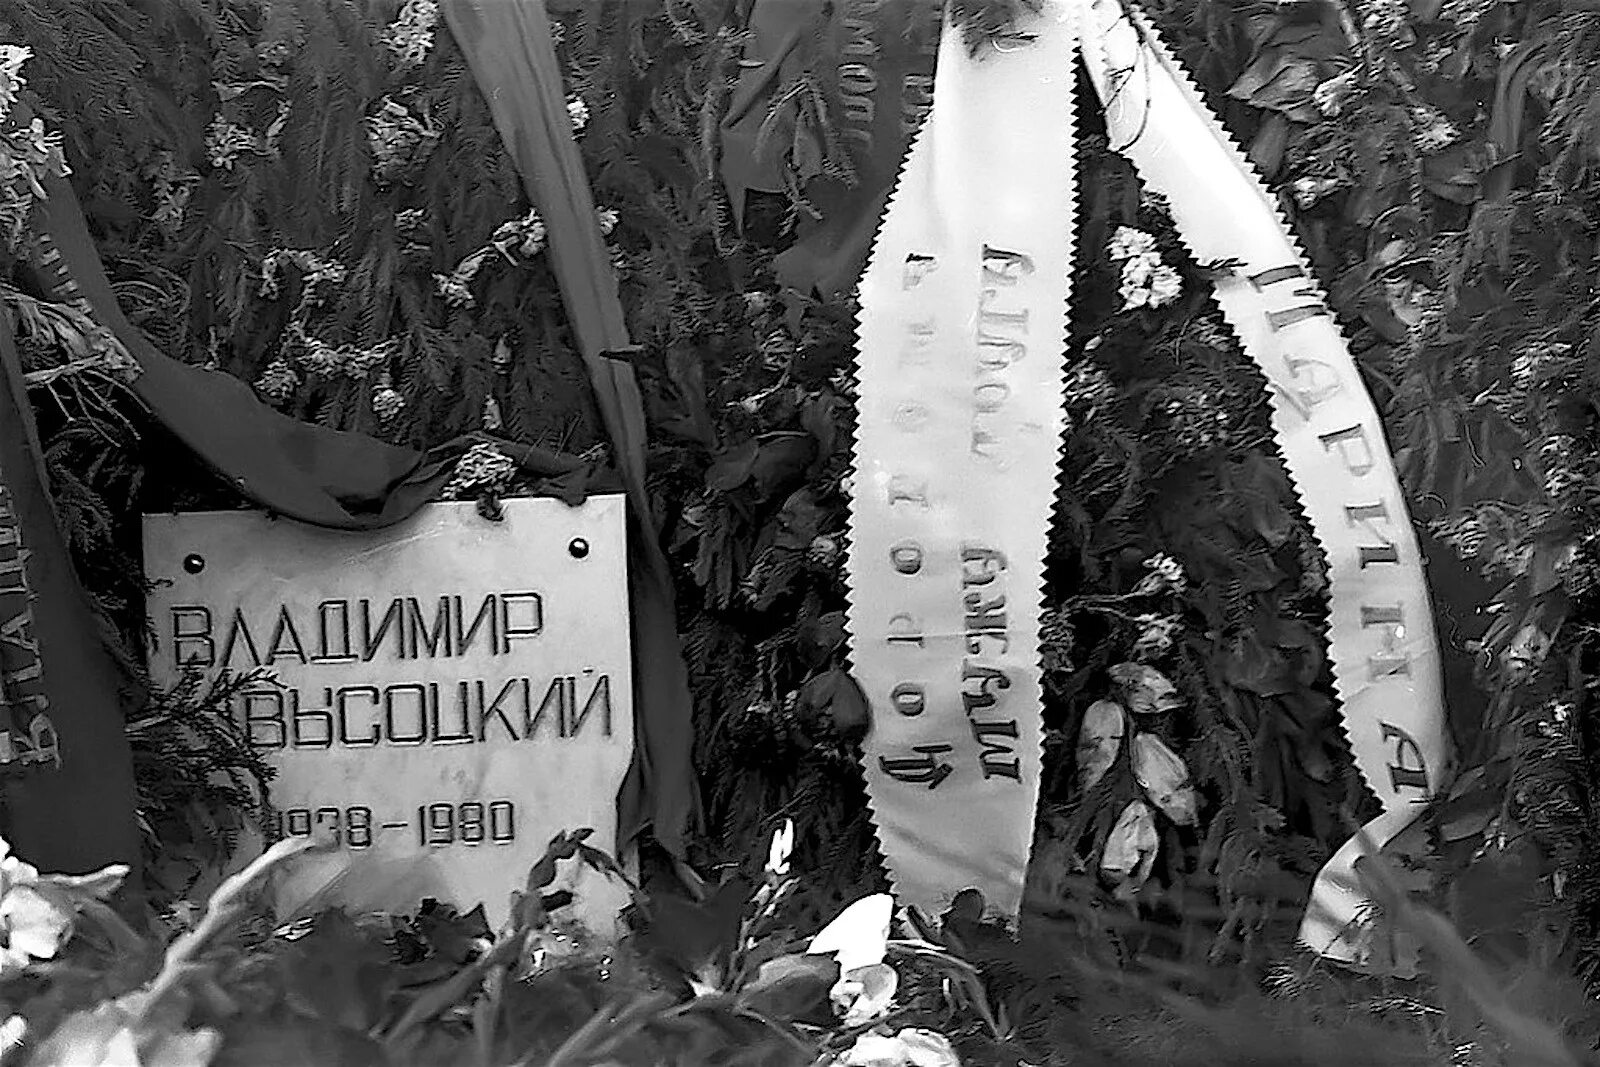 Прощание с владимиром высоцким. 25 Июля 1980 Высоцкий похороны. Москва 1980 похороны Высоцкого.